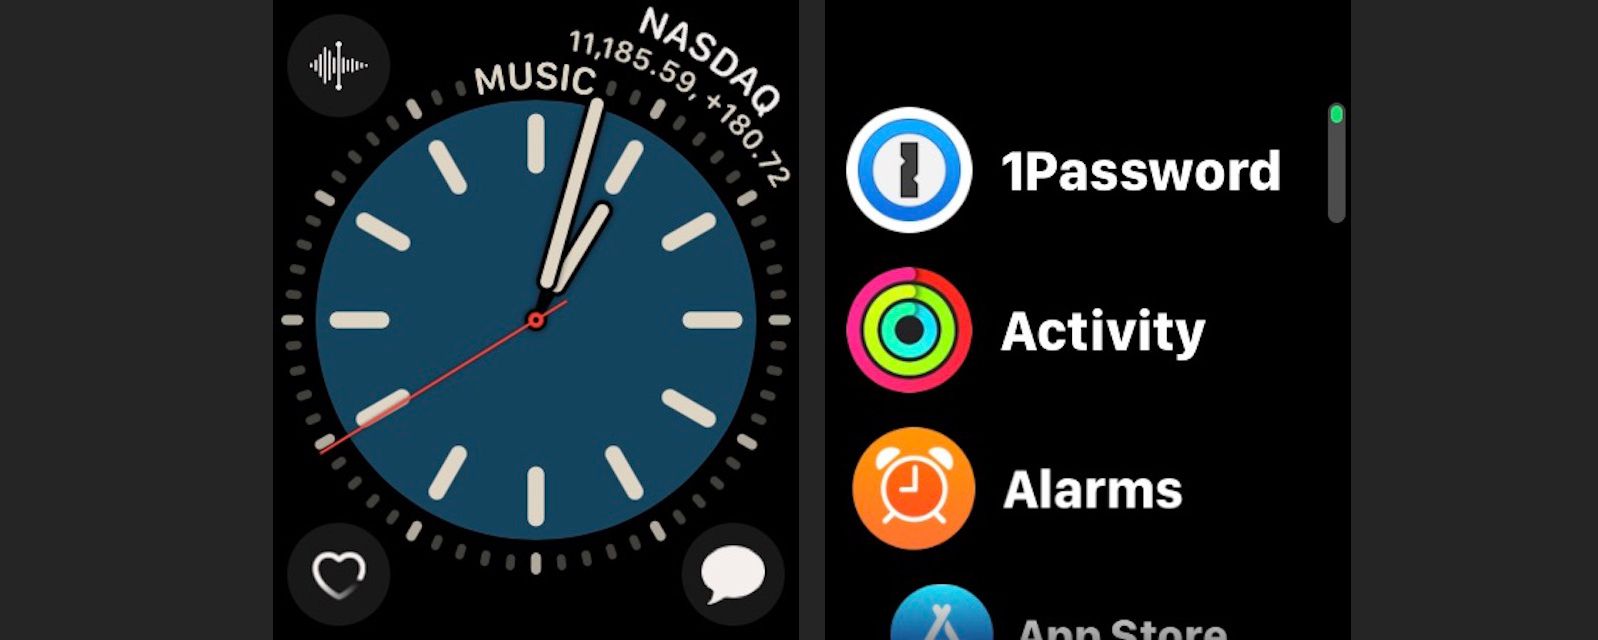 Tryck på sidoknappen på en Apple Watch och bläddra bland aktiva appar